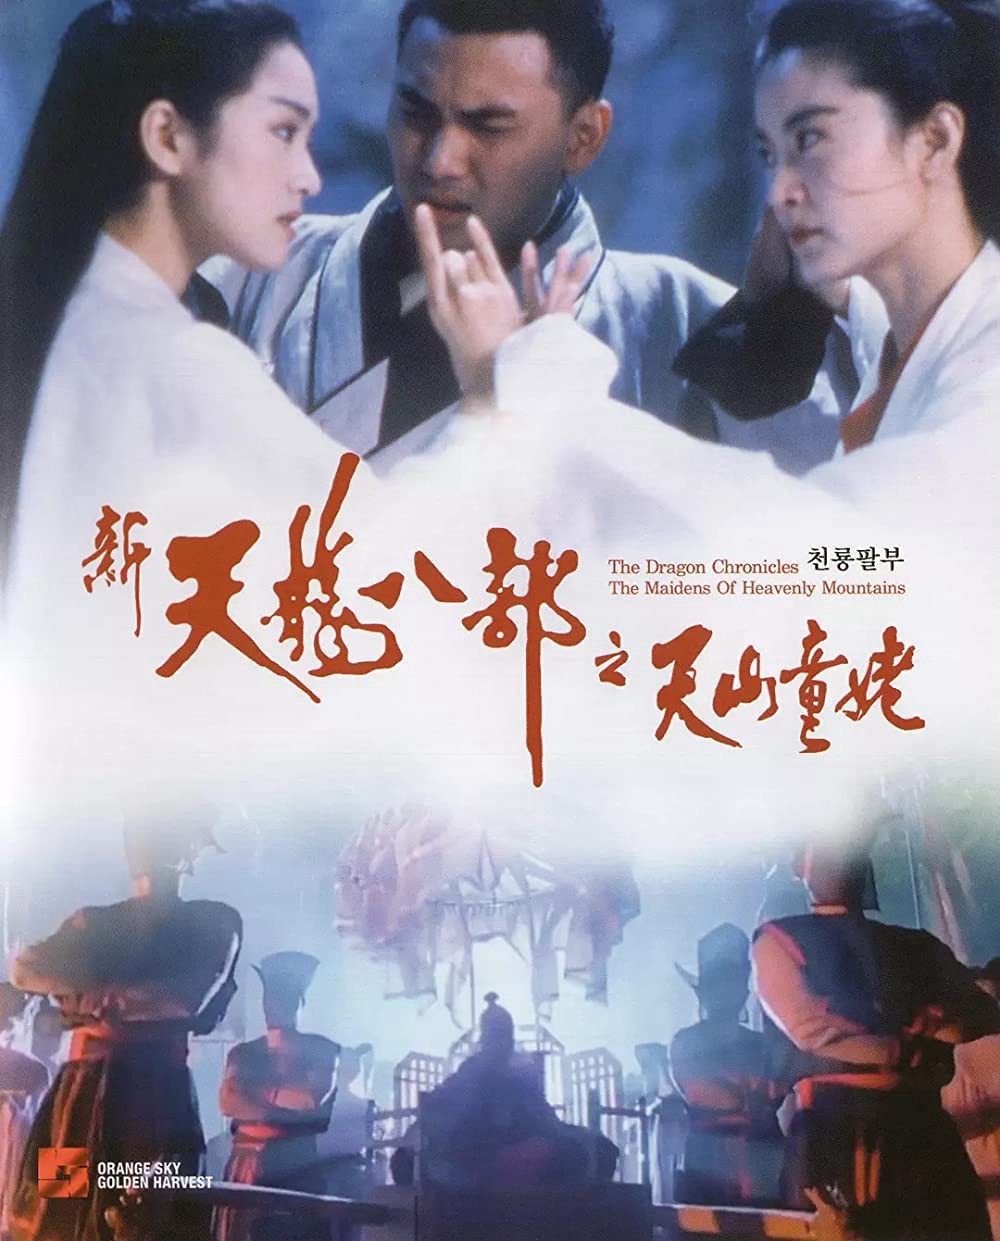 Thiên long bát bộ - Thiên sơn đồng lão - Thiên long bát bộ - Thiên sơn đồng lão (1994)